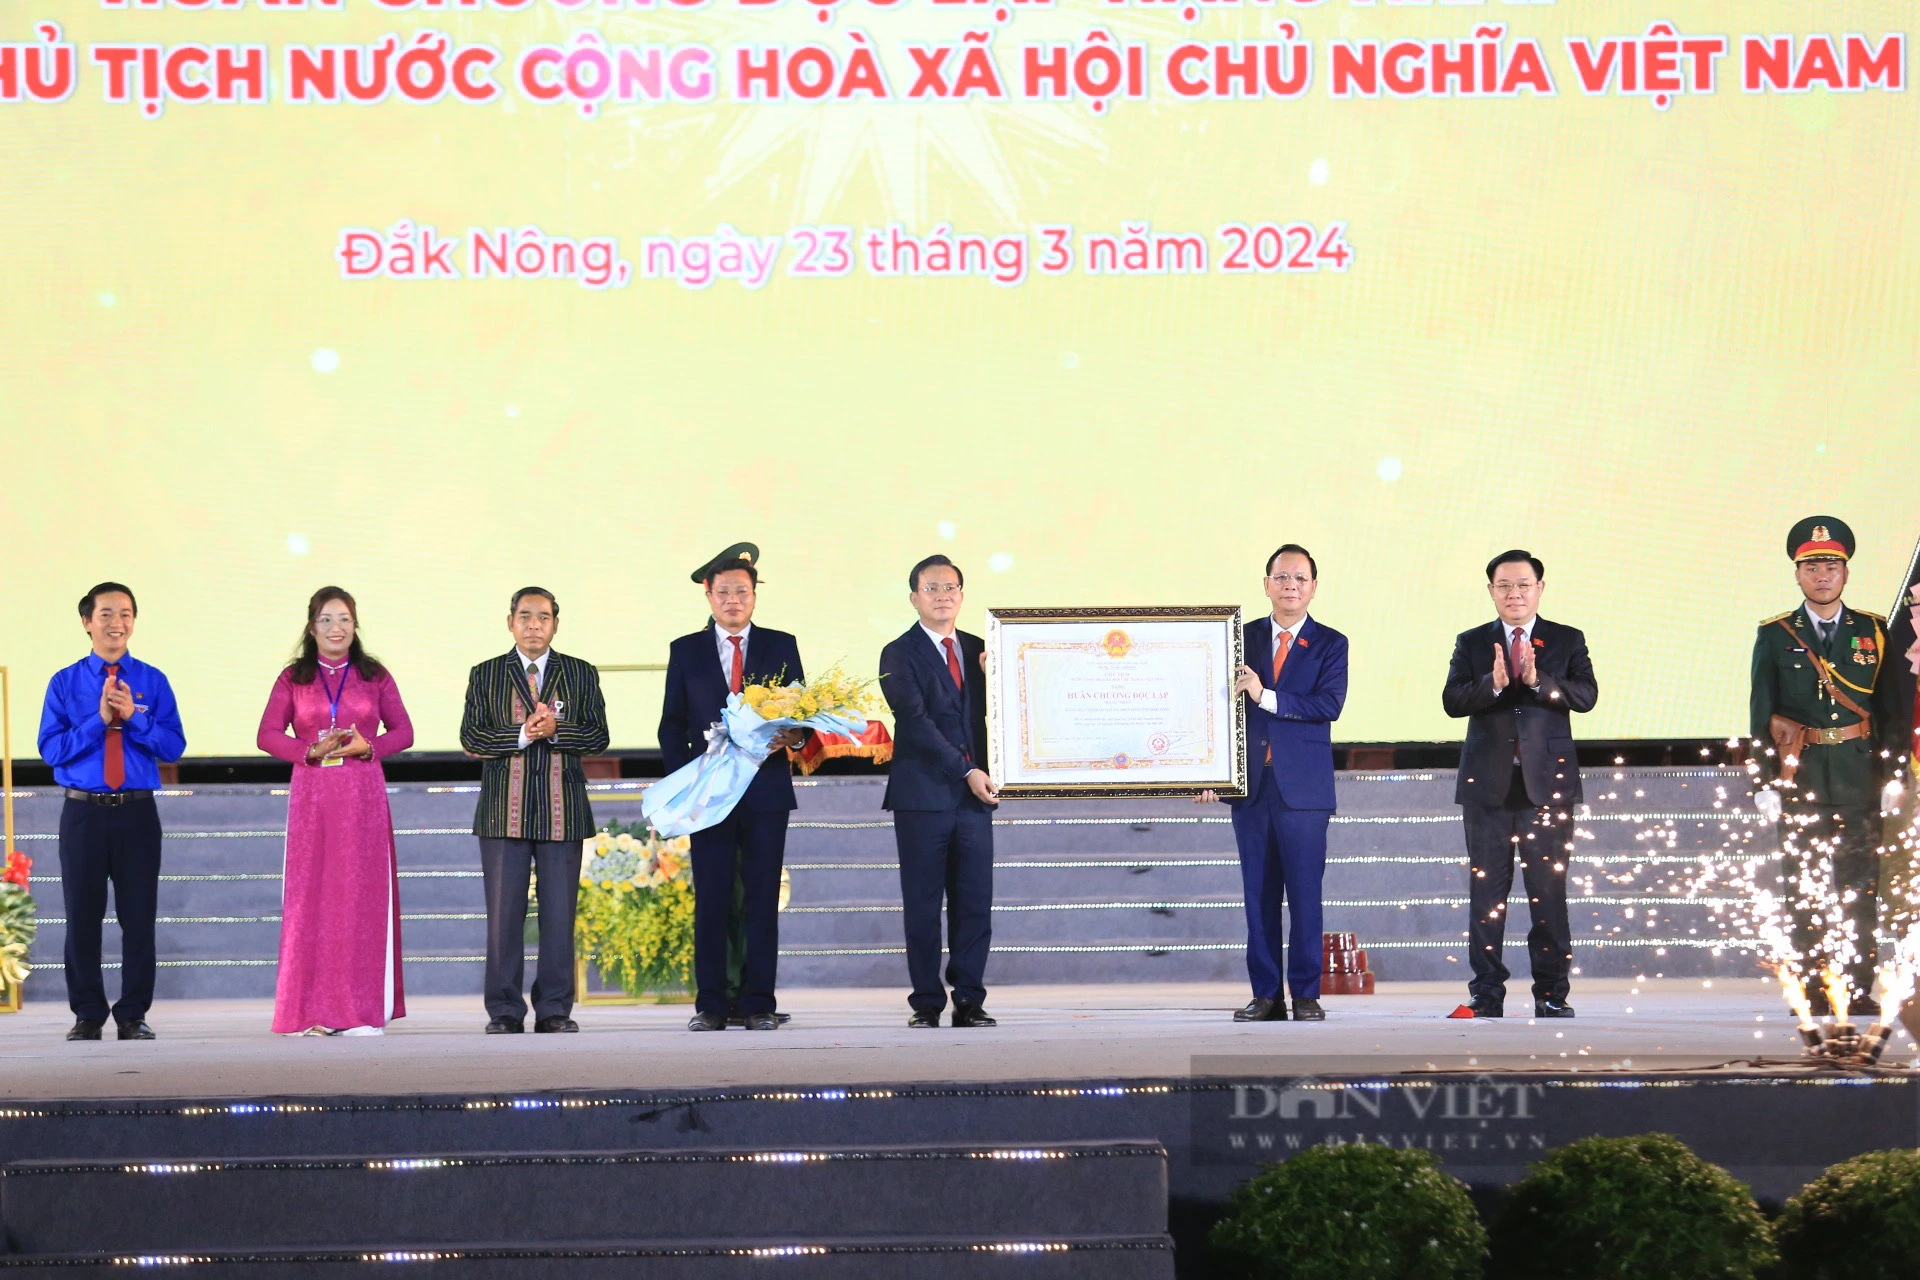 Chủ tịch Quốc hội Vương Đình Huệ dự Lễ kỷ niệm 20 năm tái lập tỉnh Đắk Nông- Ảnh 4.